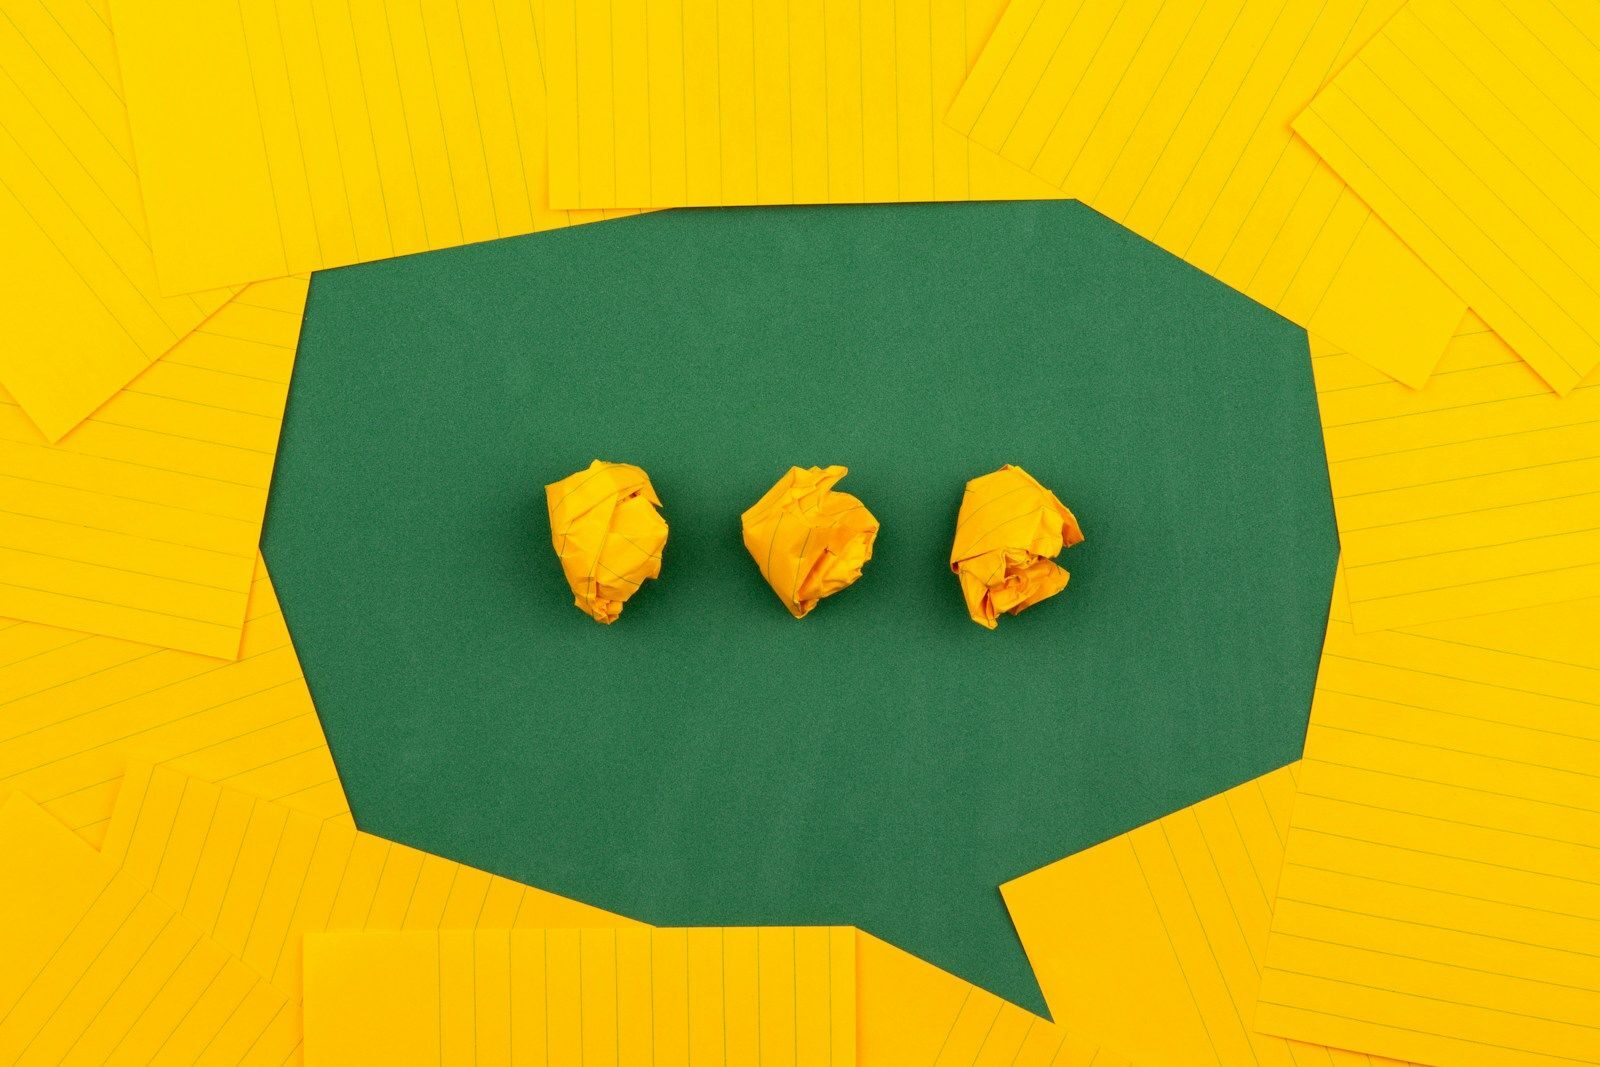 Trois papiers jaunes froissés sur une surface verte entourés de papiers lignés jaunes.